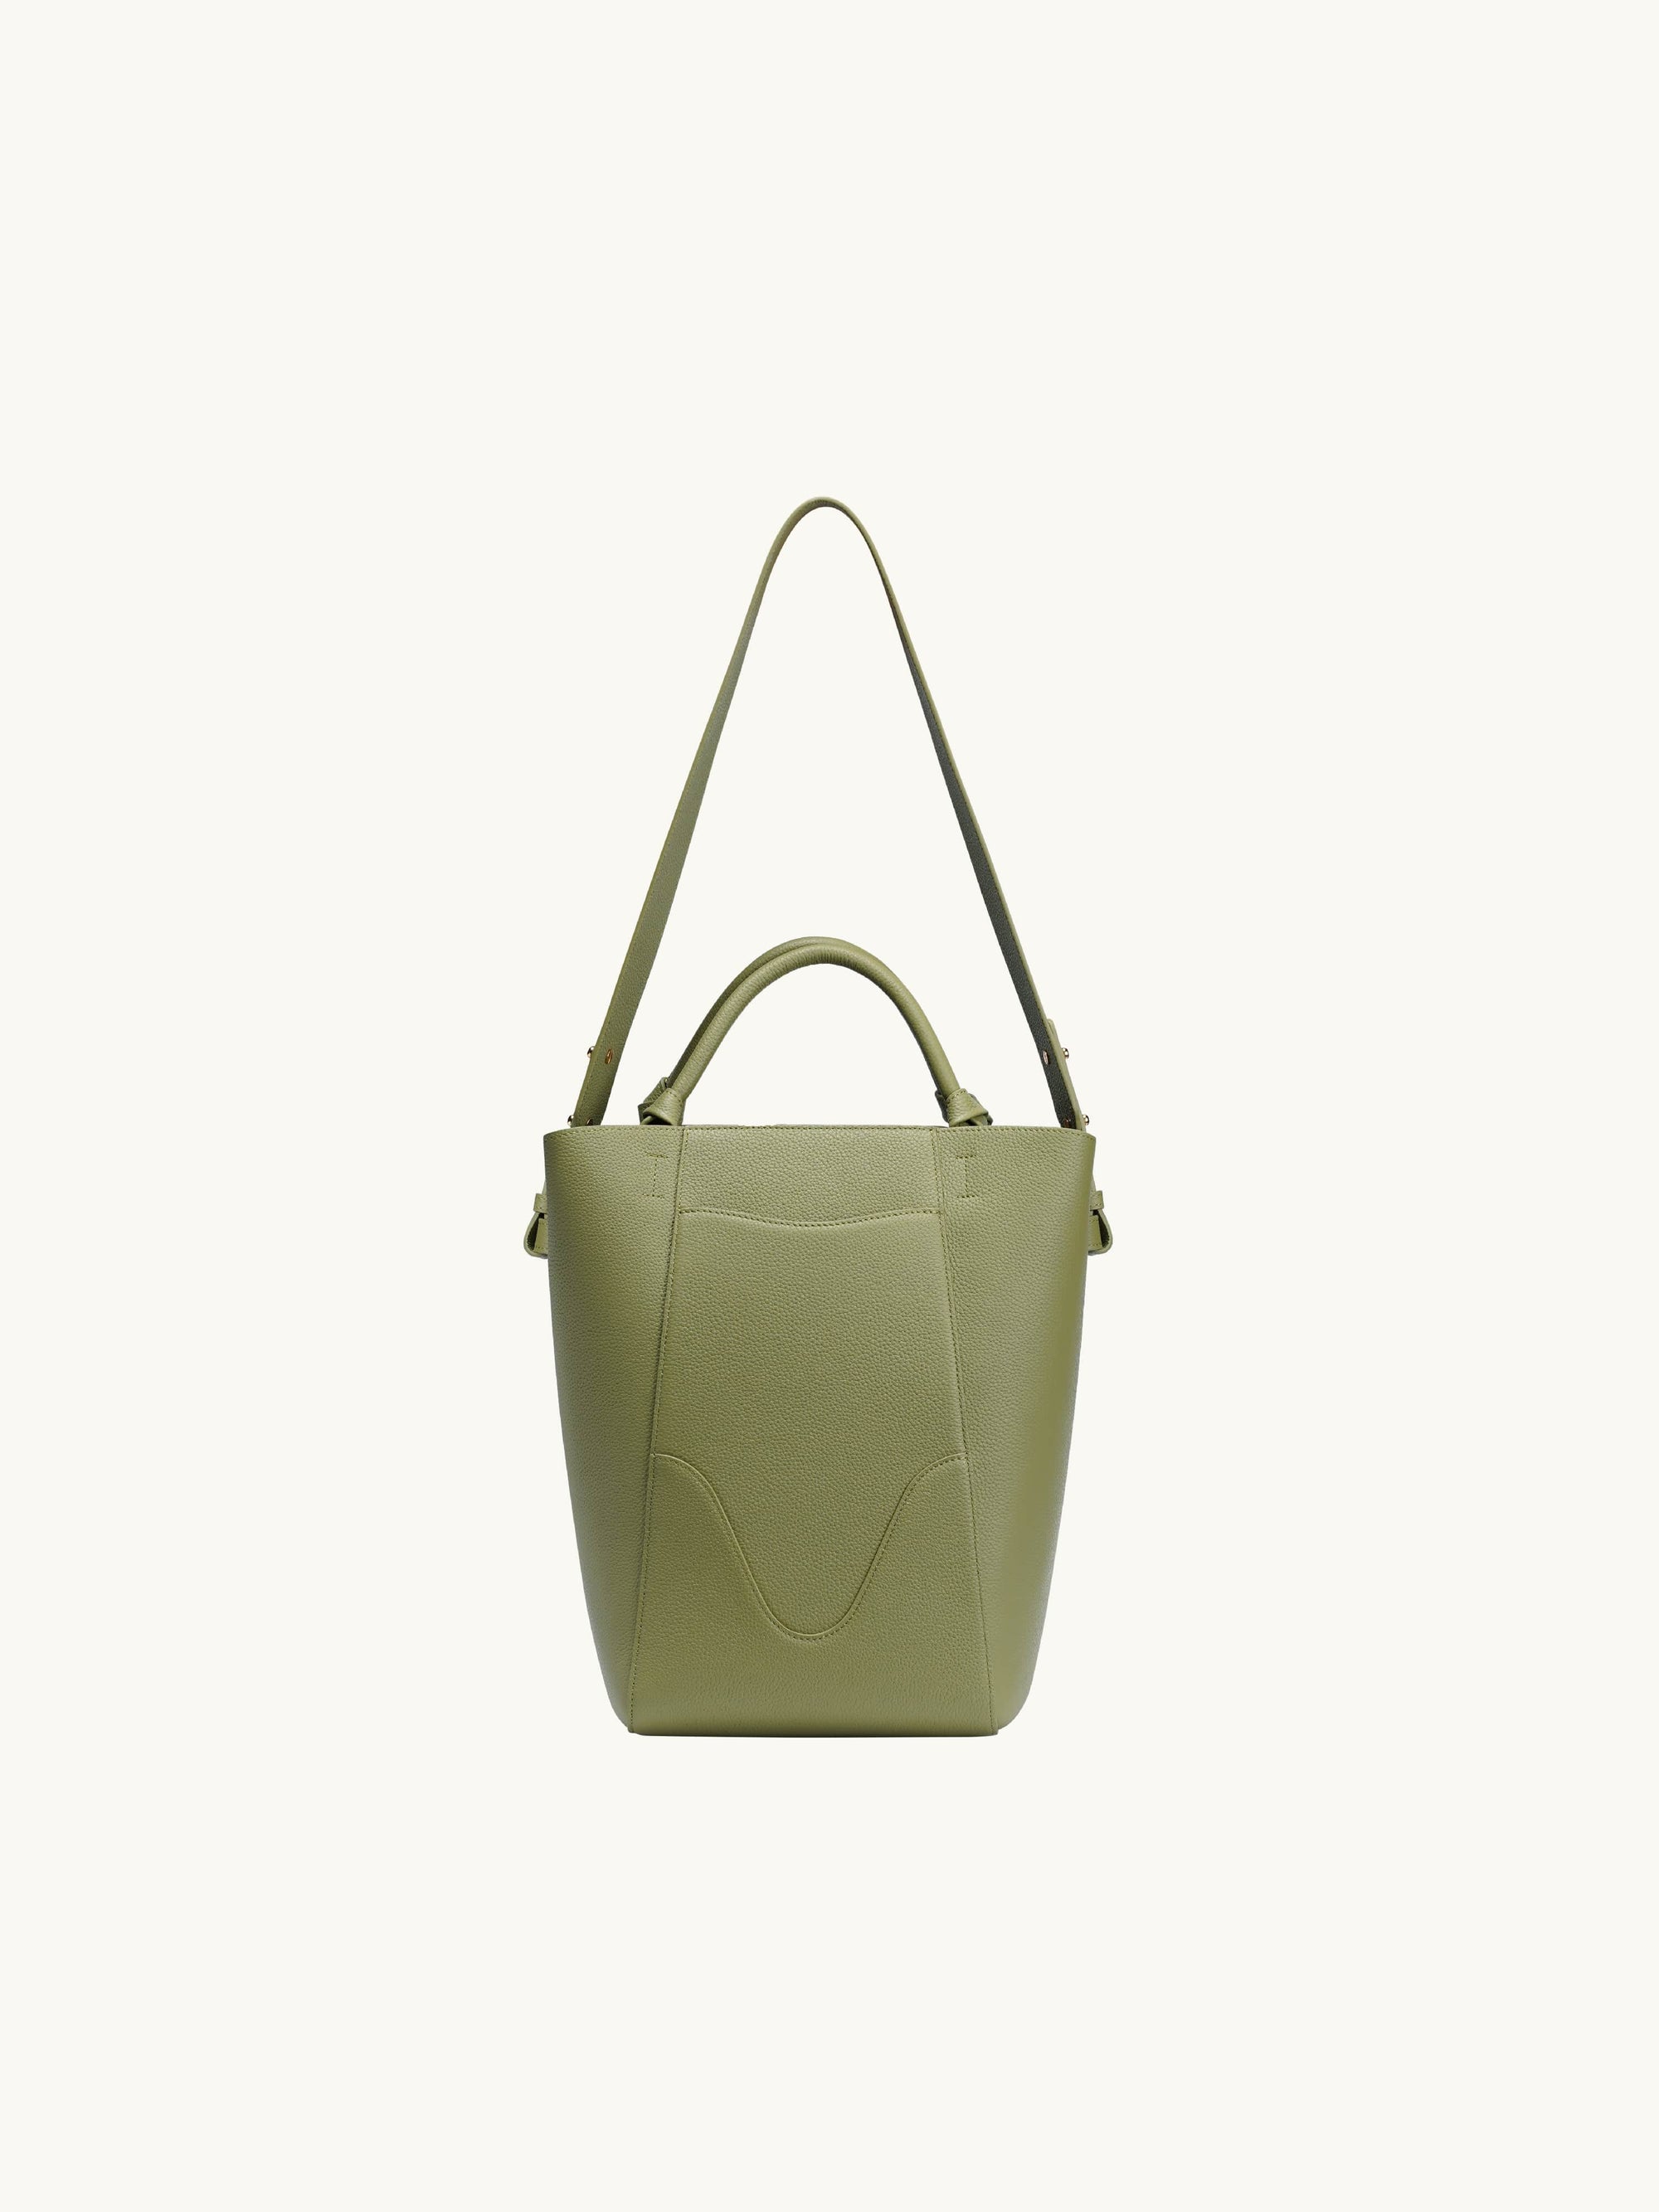 Nano Marina Bucket Bag Olive, Green Bucket Purse, OLEADA